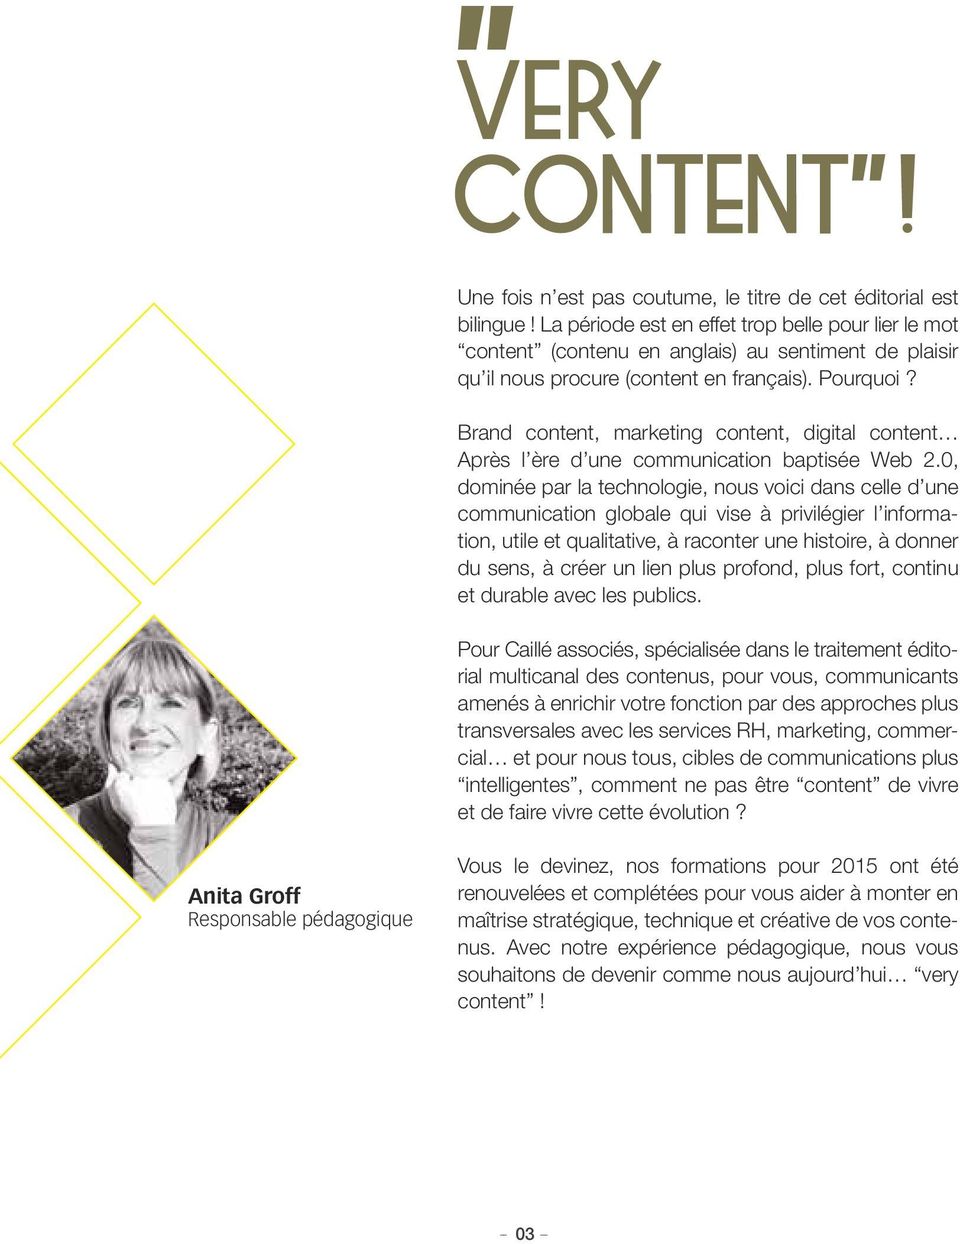 Brand content, marketing content, digital content Après l ère d une communication baptisée Web 2.